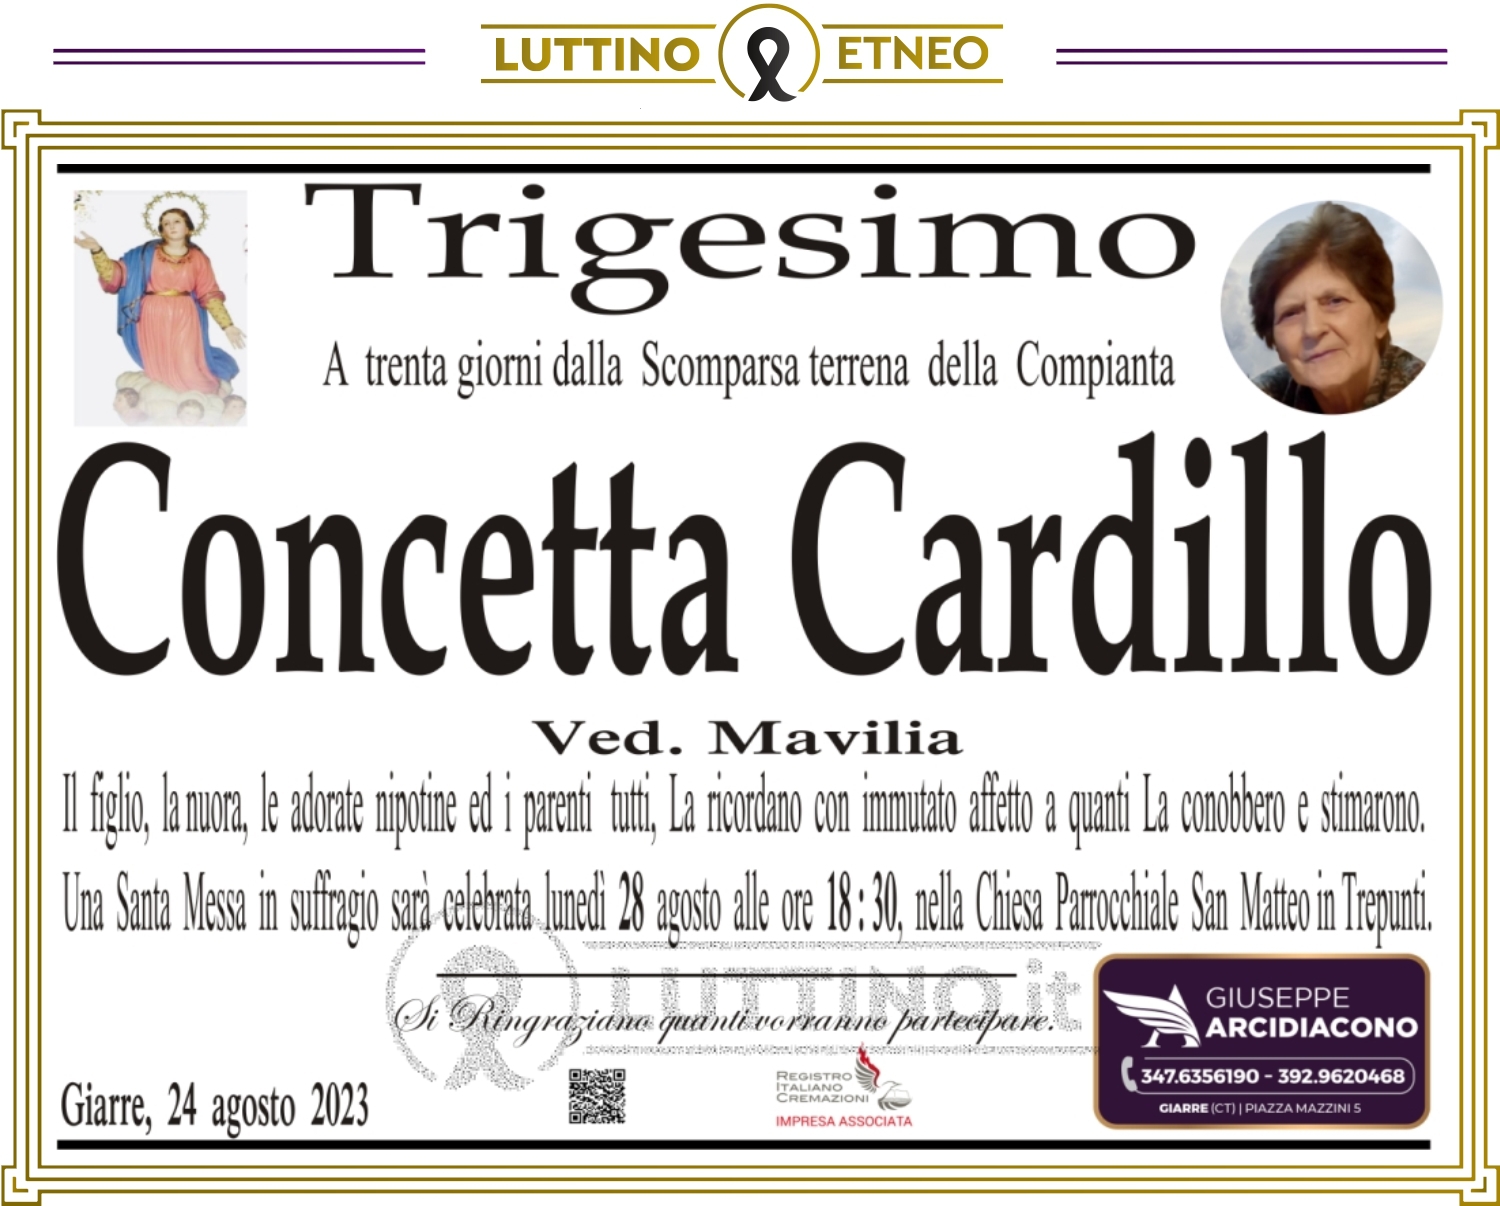 Concetta Cardillo